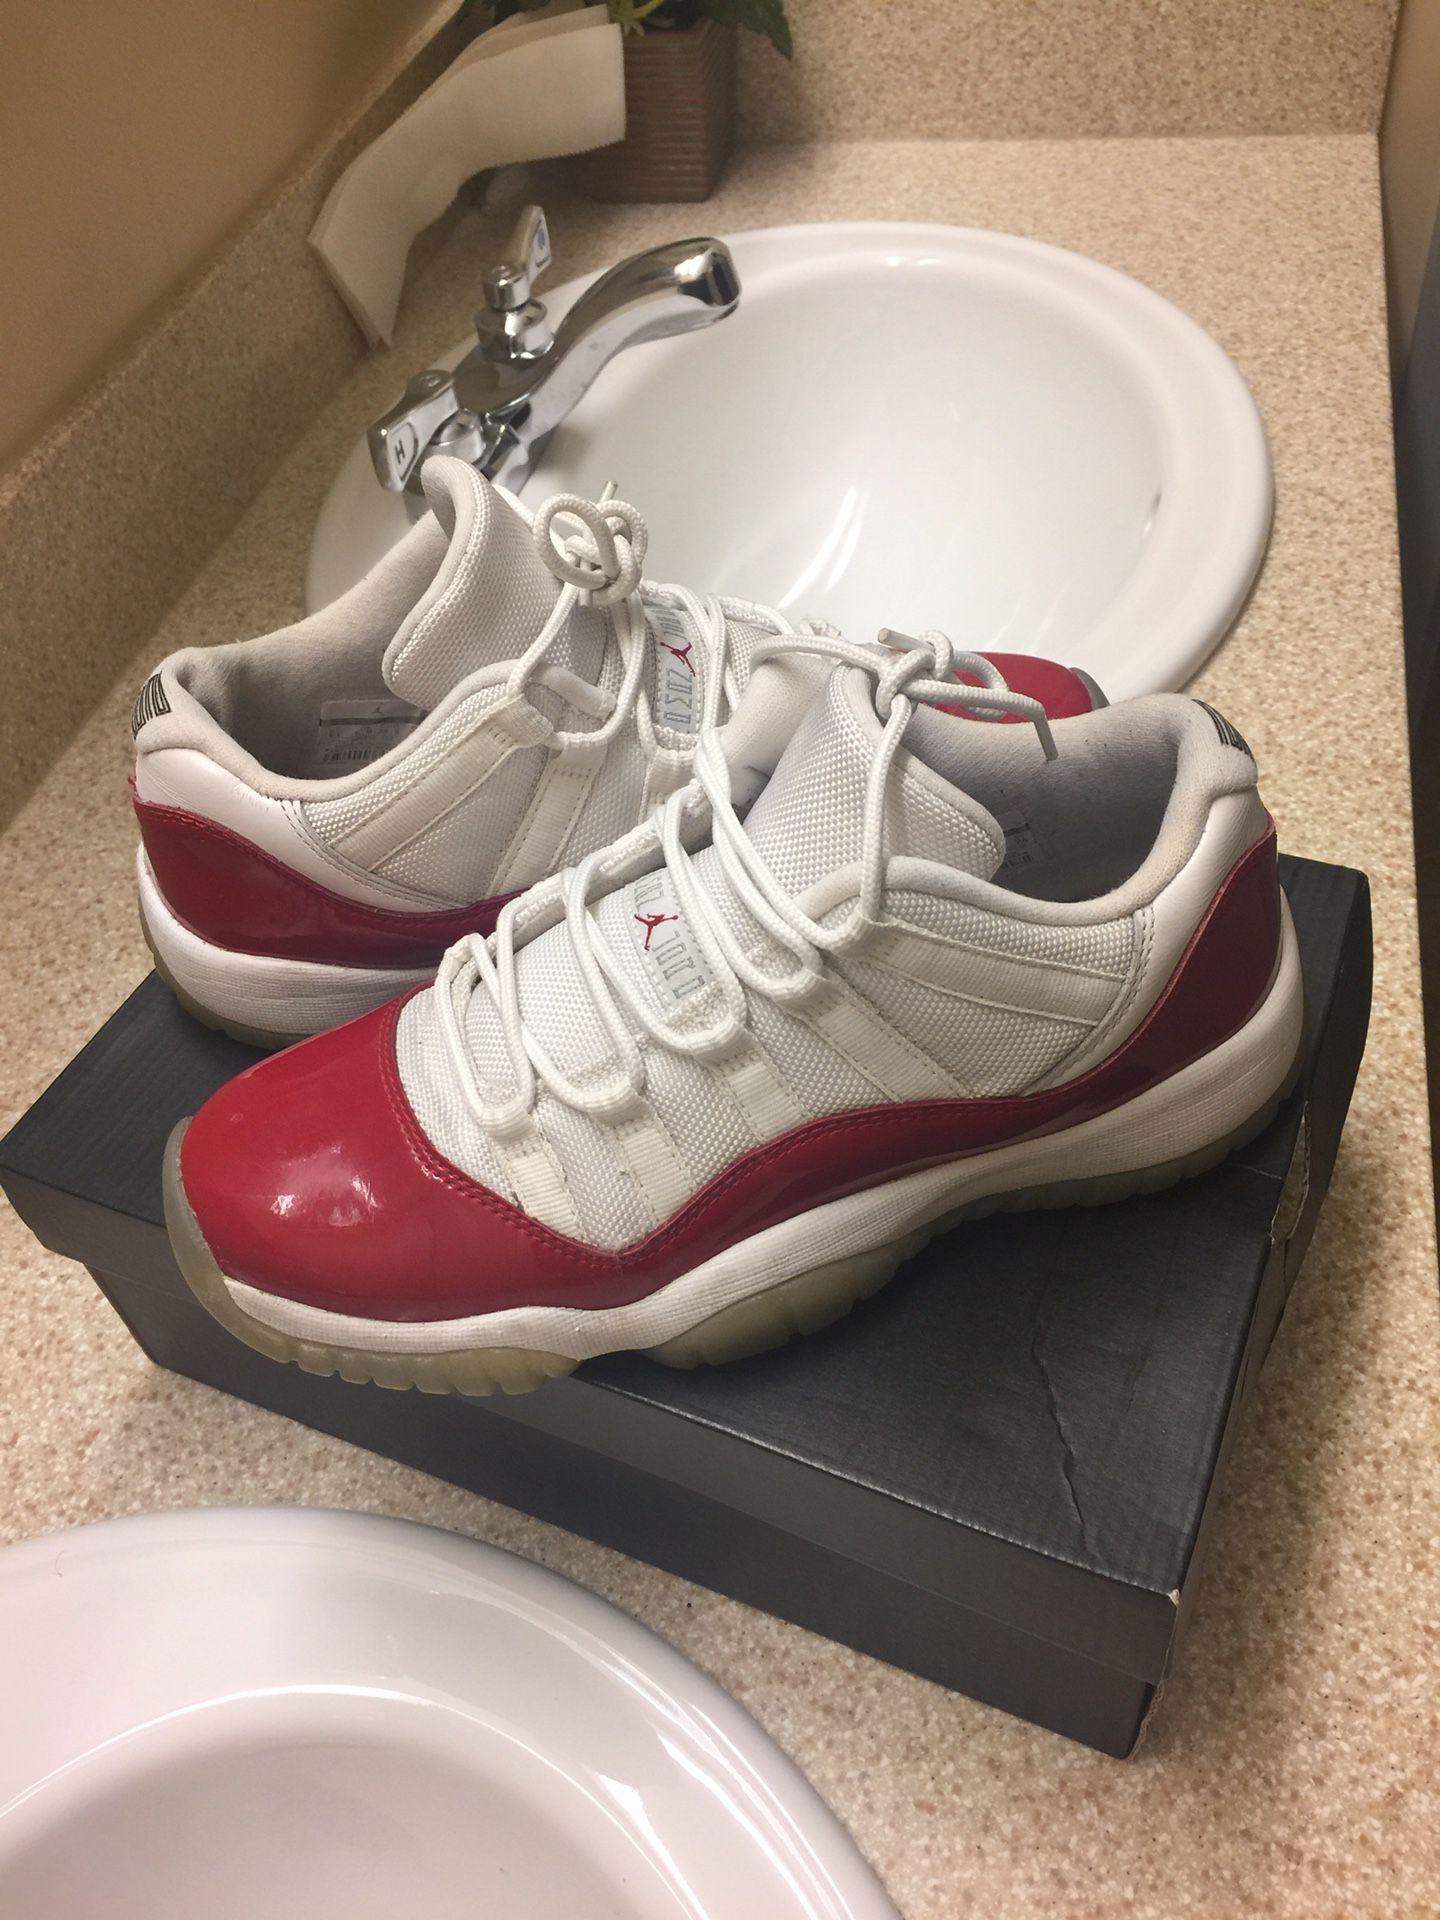 Jordan 11s red & white